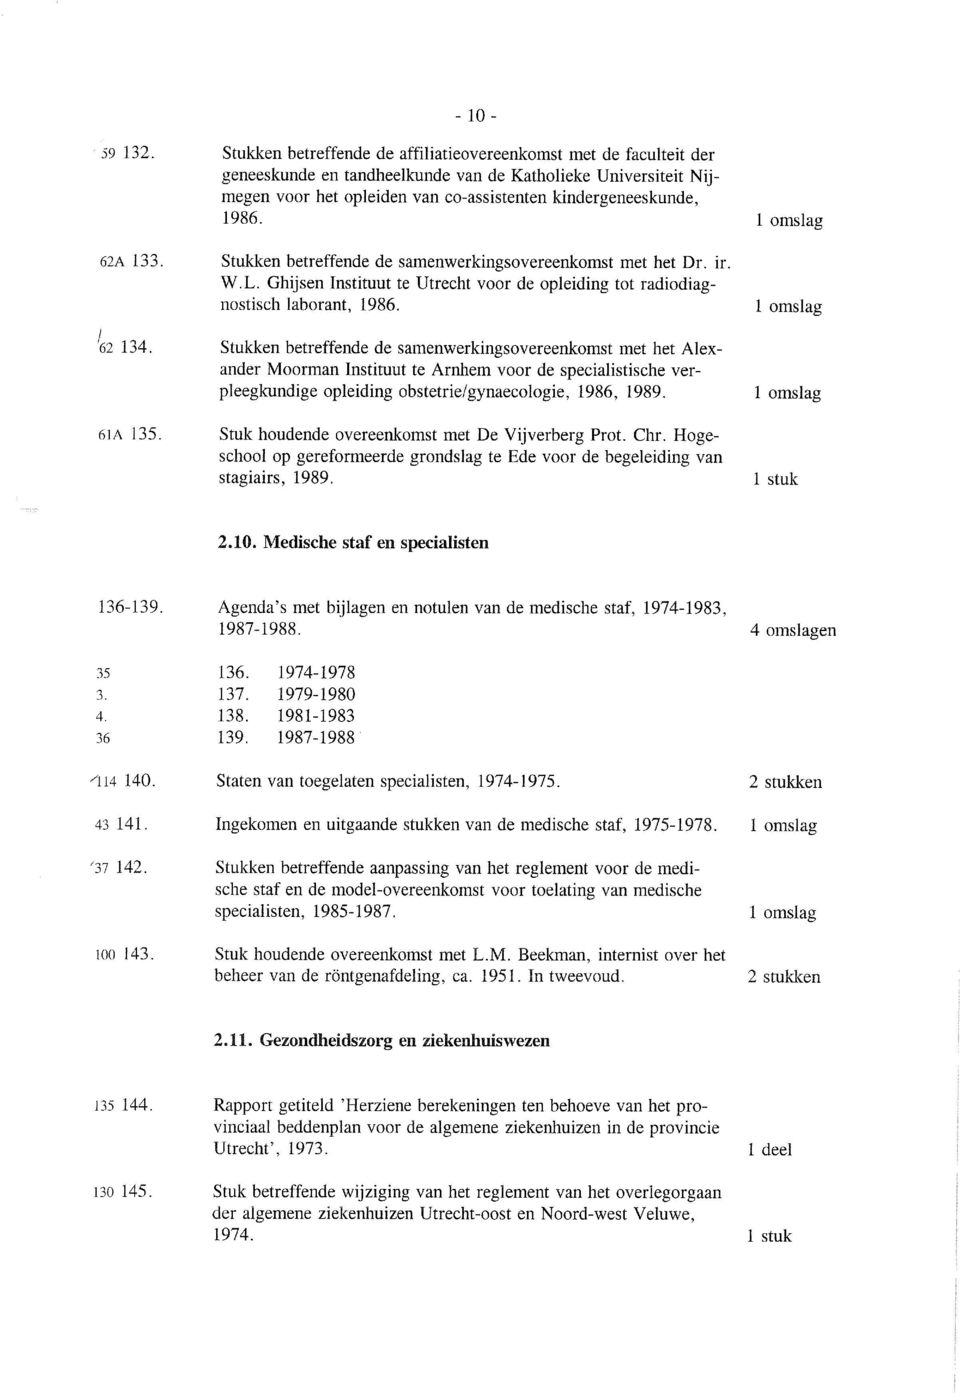 62A 133. Stukken betreffende de samenwerkingsovereenkomst met het Dr. ir. W.L. Ghijsen Instituut te Utrecht voor de opleiding tot radiodiagnostisch laborant, 1986. 62 134.